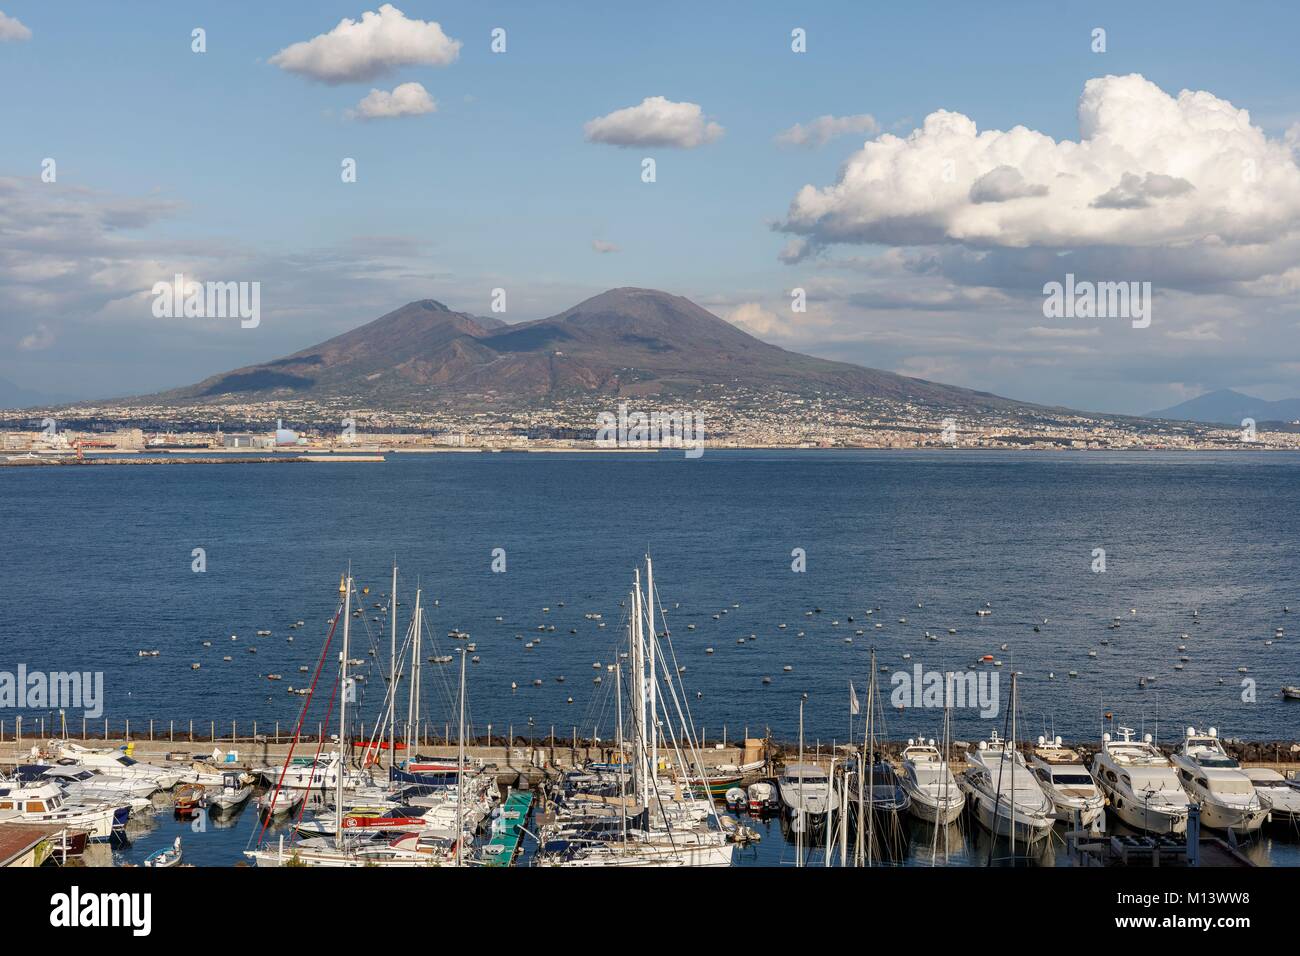 Italia, Campania, Nápoles, centro histórico catalogado como Patrimonio Mundial por la UNESCO, la bahía de Nápoles y el Monte Vesuvio. Foto de stock